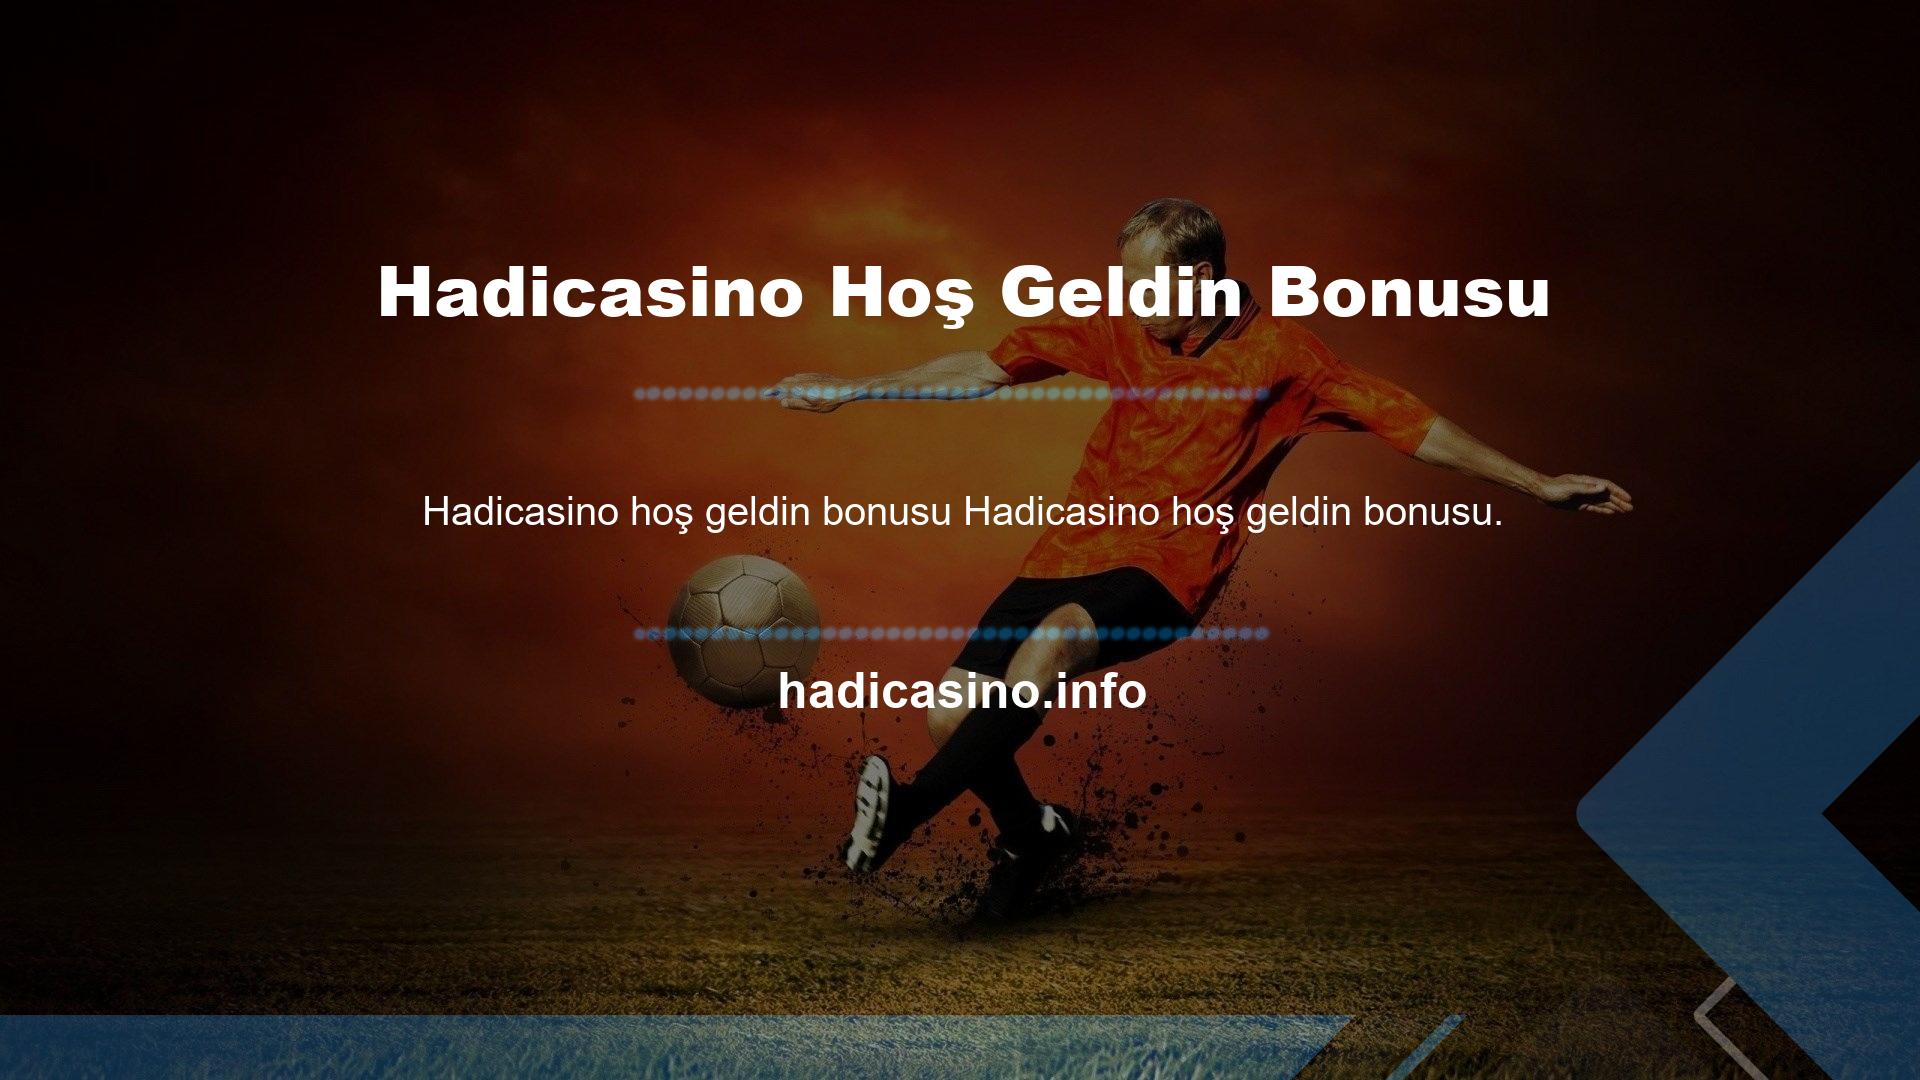 Hadicasino Hoş Geldin Bonusu, Türkiye'deki güvenli çevrimiçi kilit şirketlerinden biridir